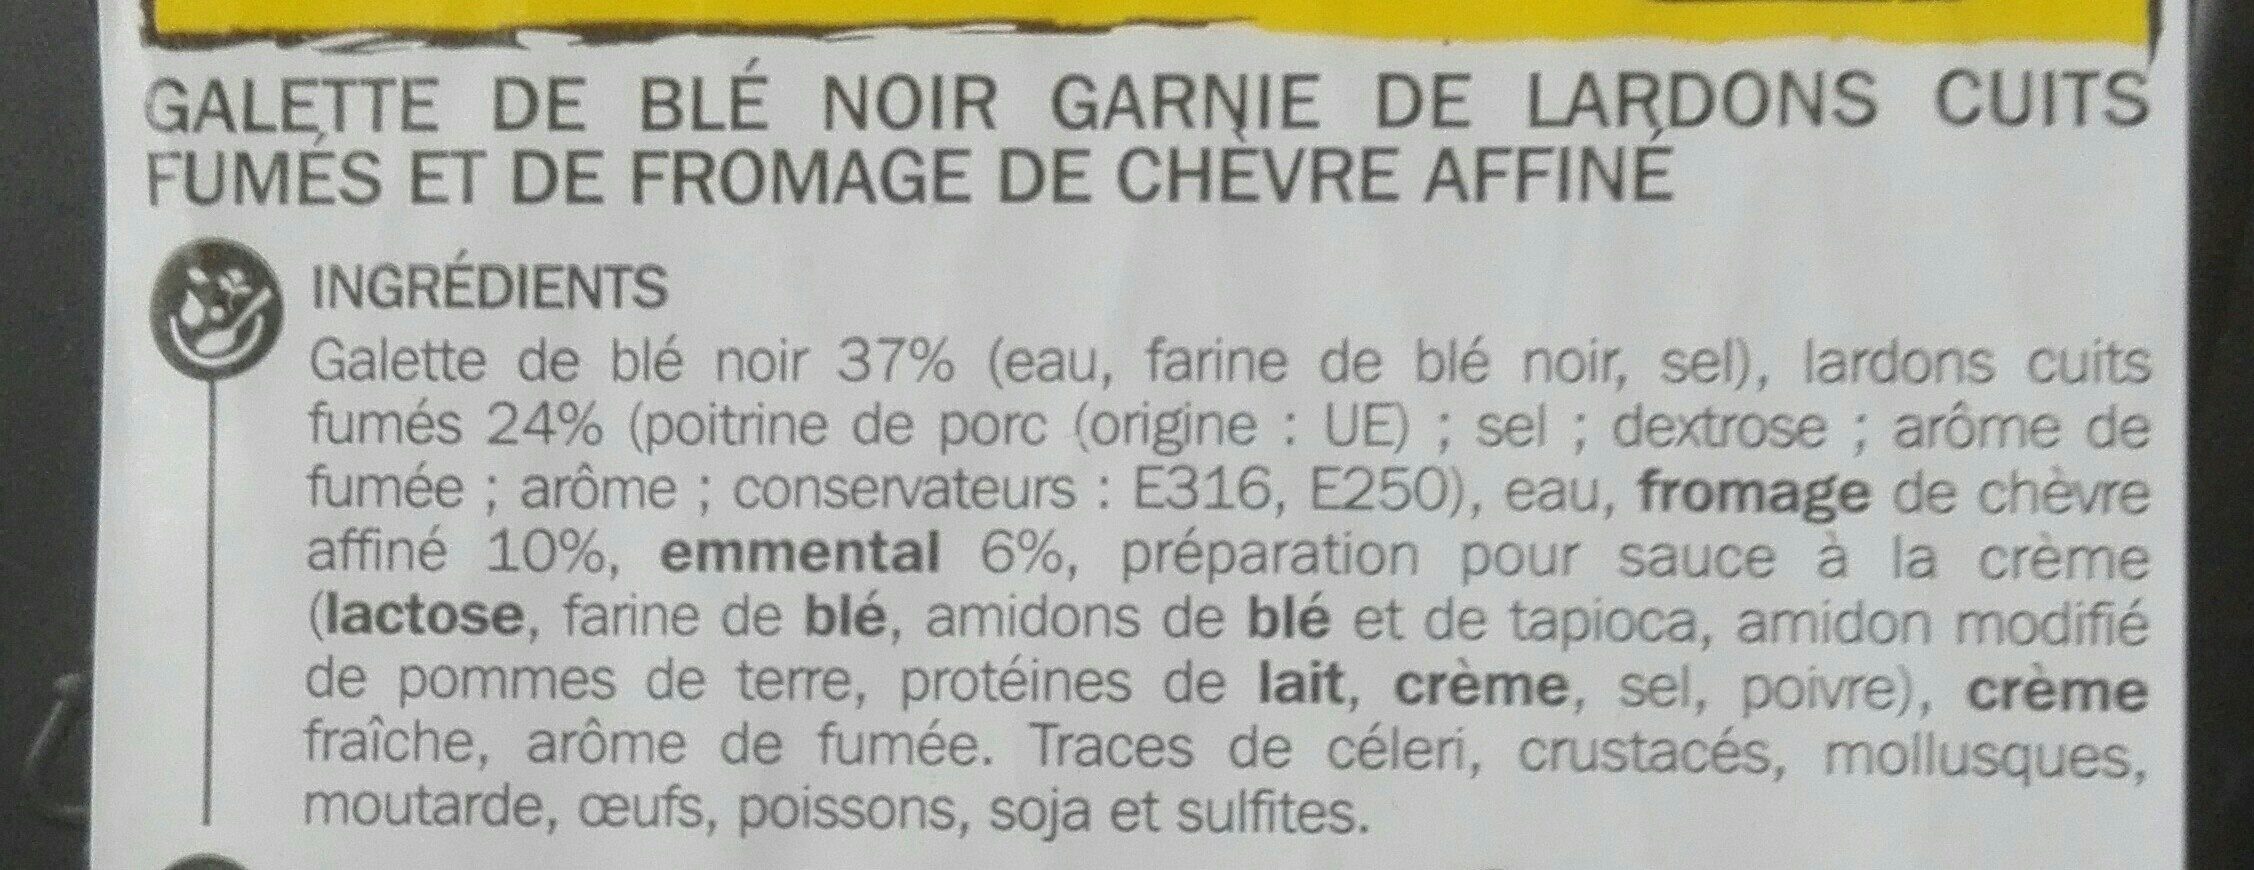 Galette Blé Noir Côté Table, Lardons Chèvre - Ingredients - fr